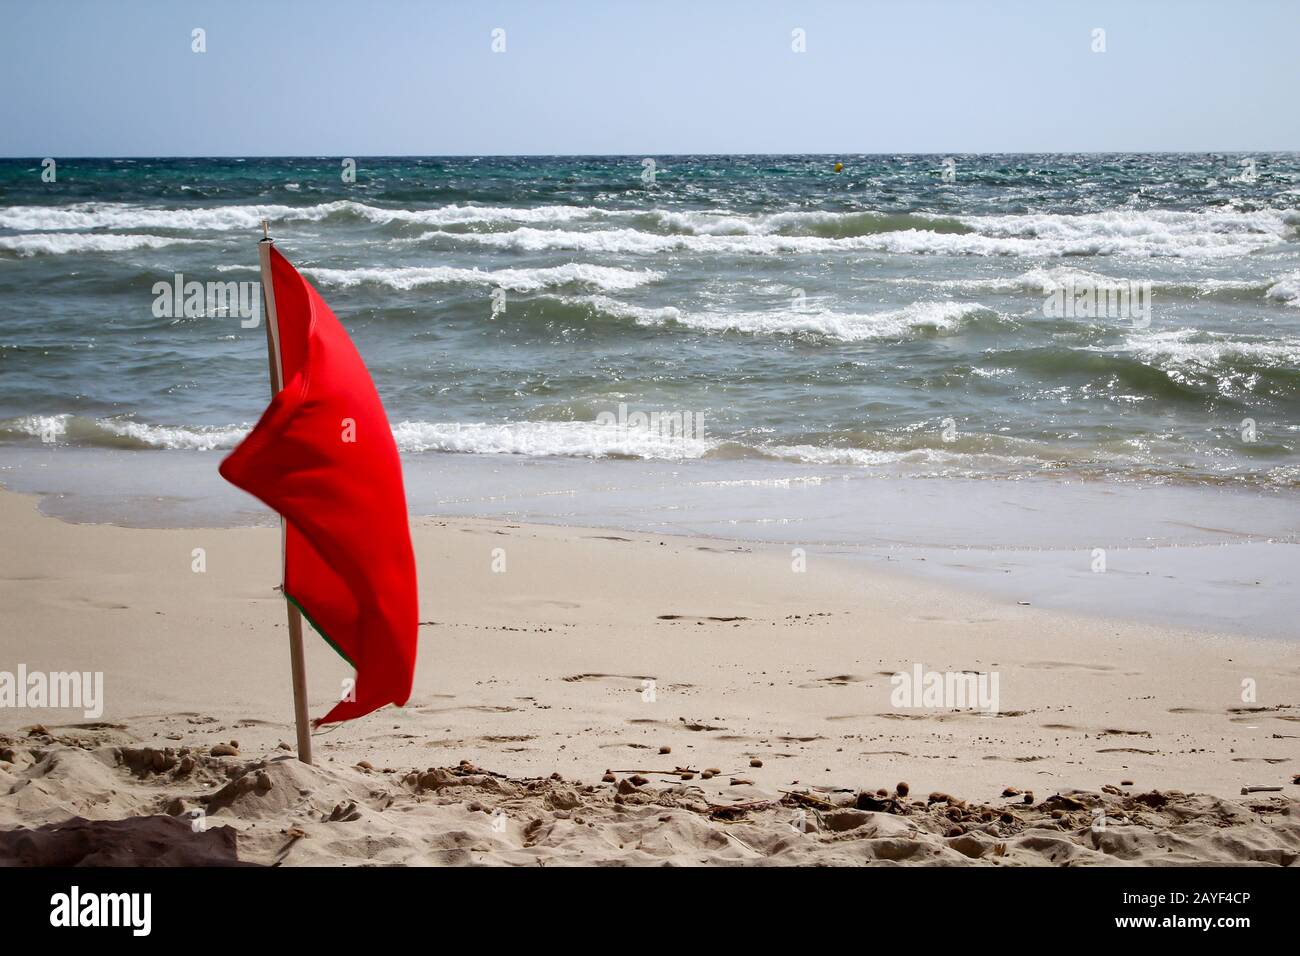 Le bandiere sulla spiaggia indicano pericoli come meduse, undercurrent e altri pericoli Foto Stock